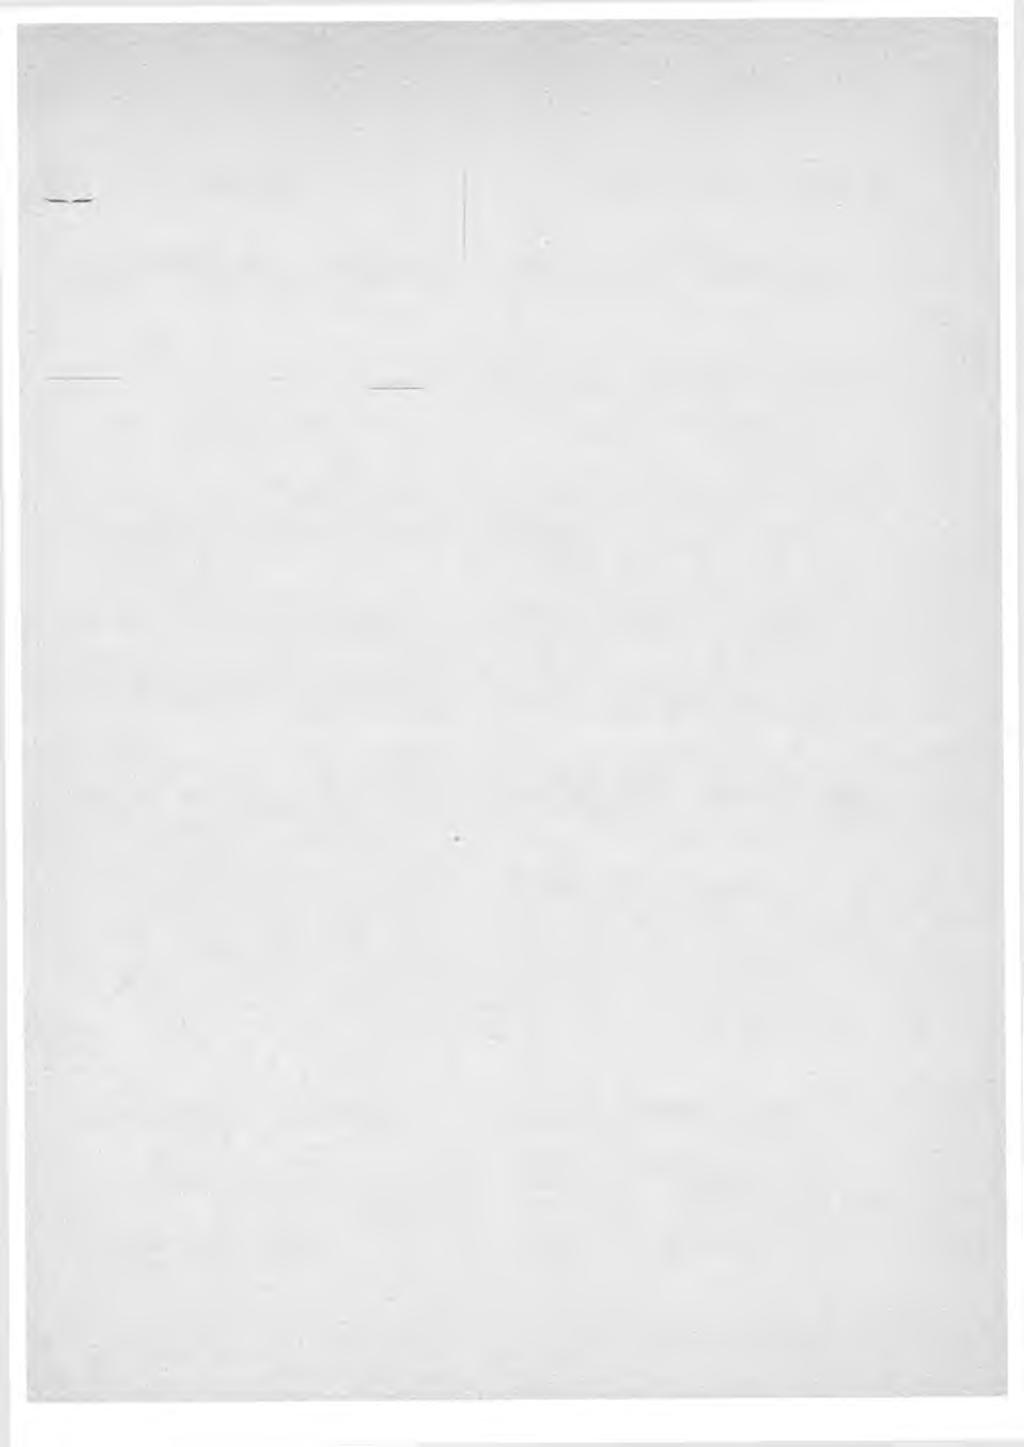 1903 Liite Suomen postihaliituksen kiertokirjeisiin H niltilcvivilta. Henkilömuutoksia. Kuollut: (12/4) postitoiraituksenhoitaja Karl Magnus HercJcman (Elimä).